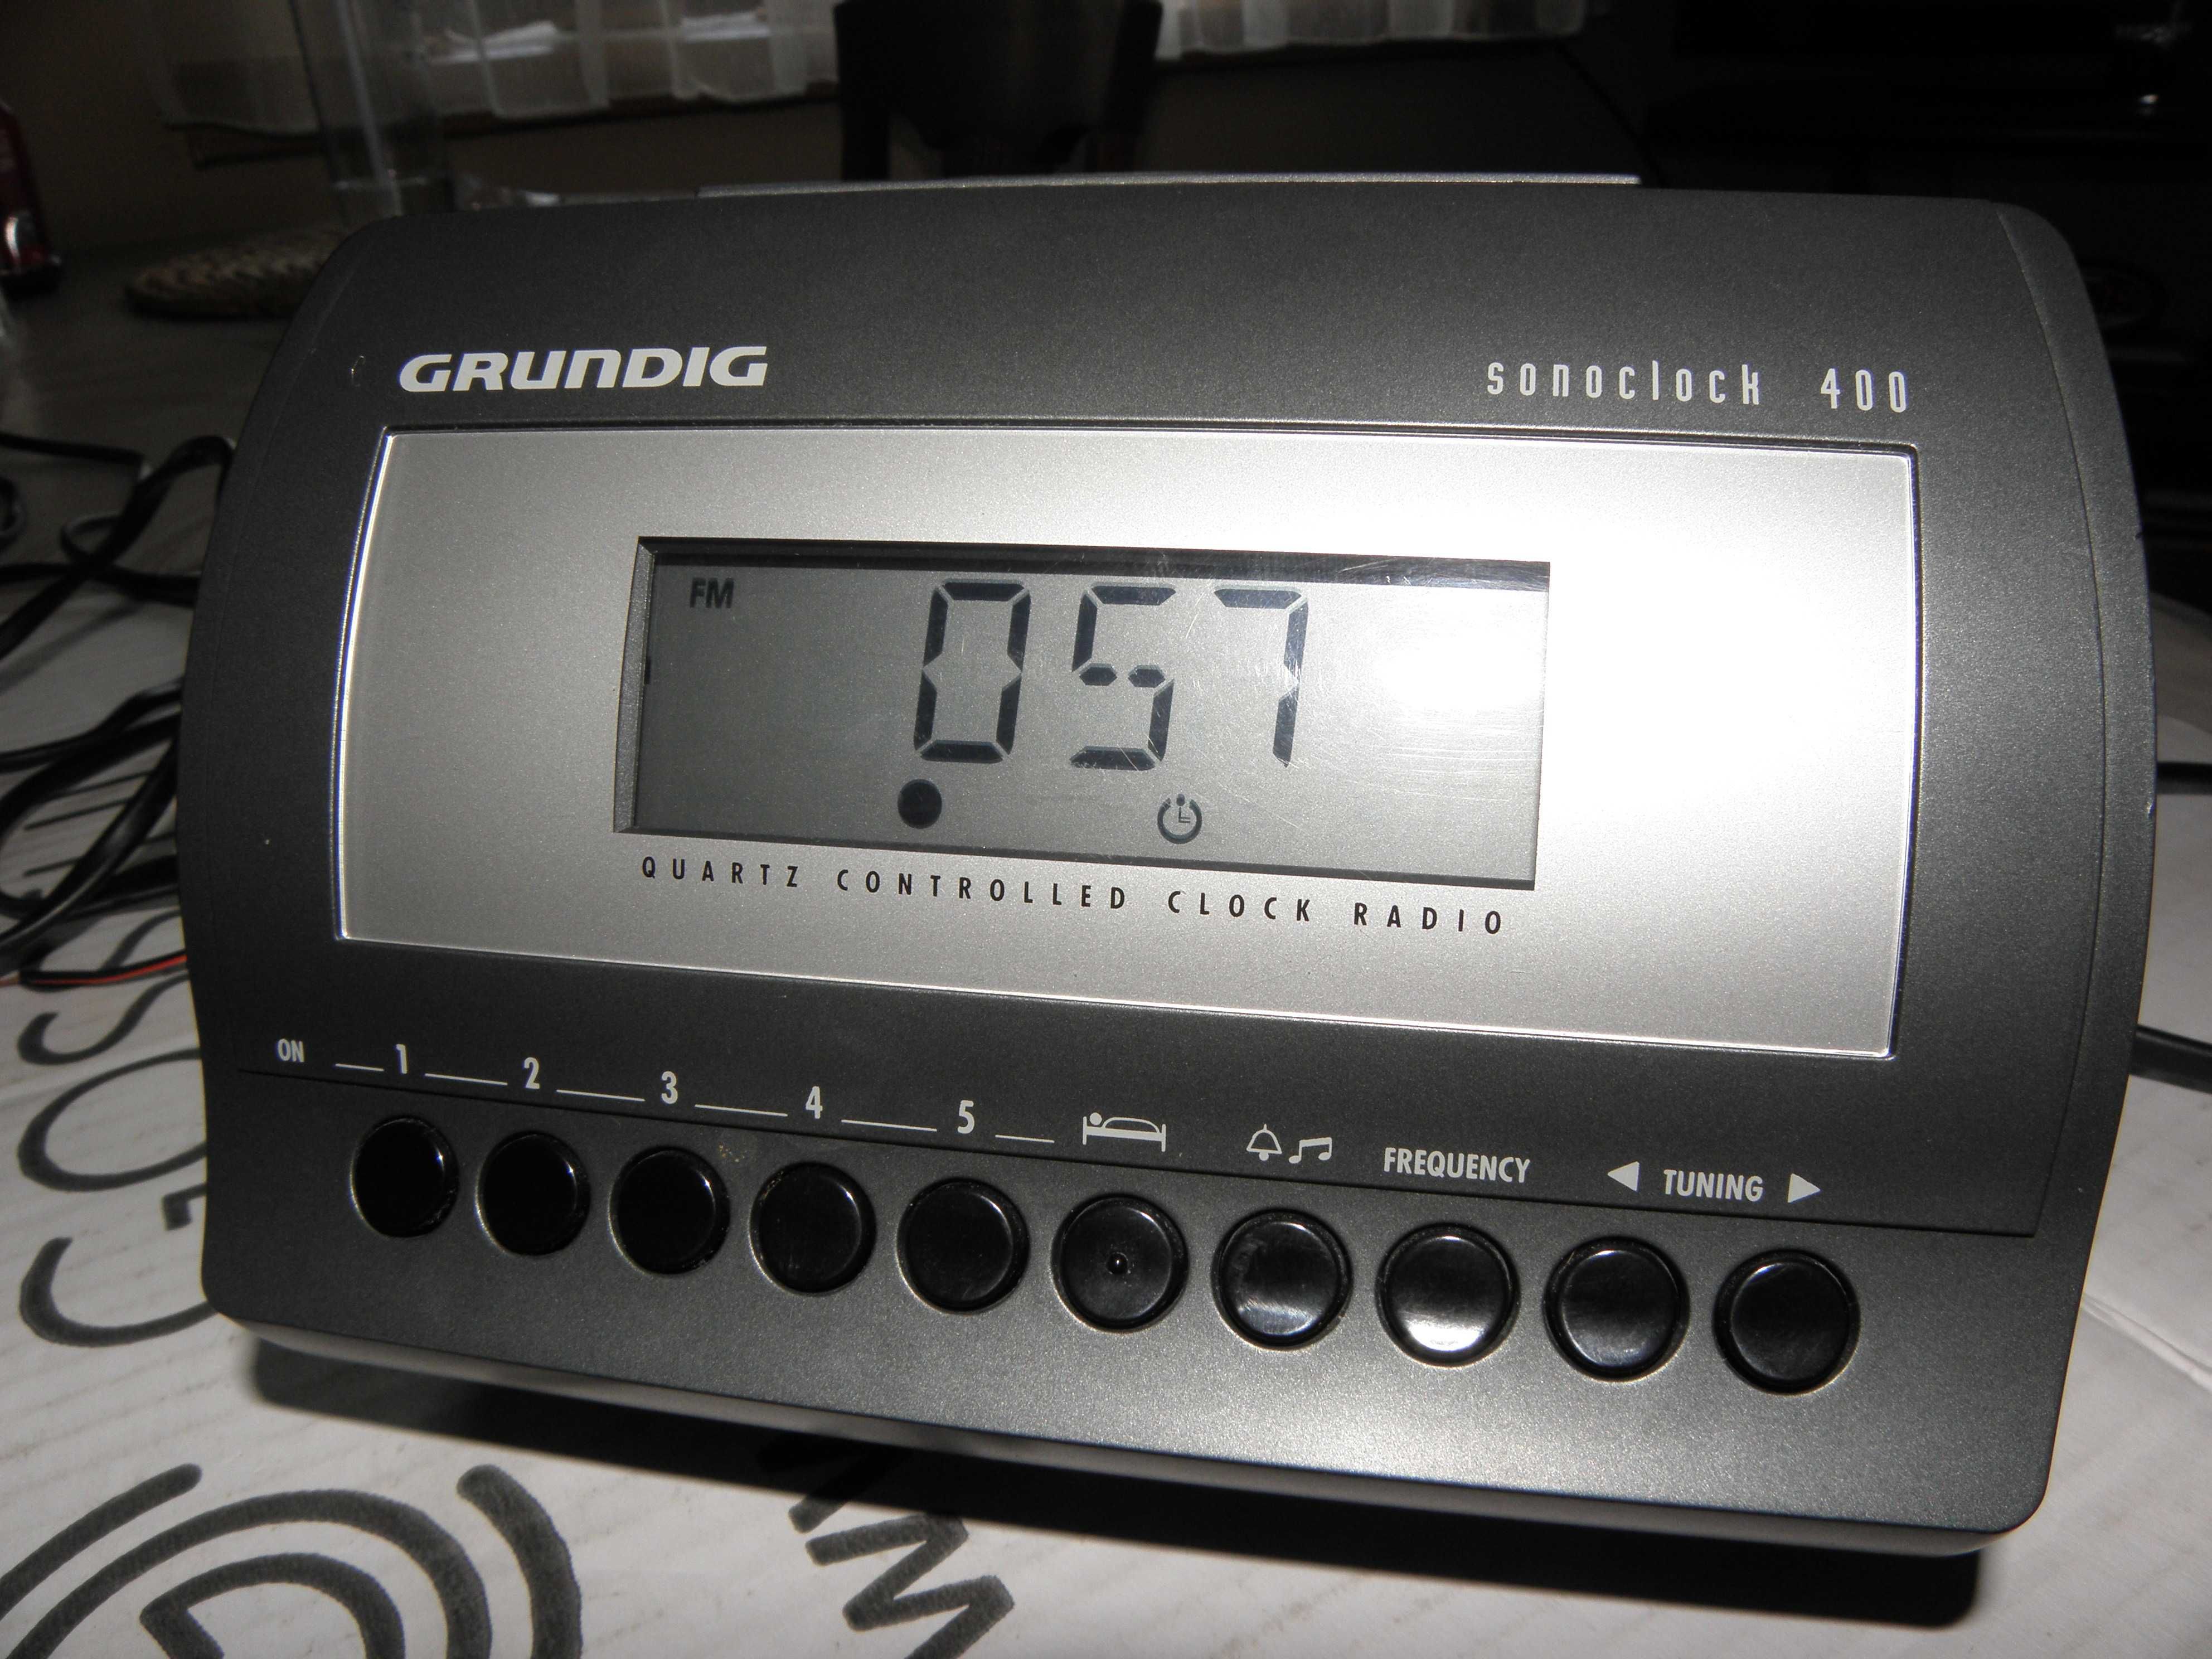 Radiobudzik Grundig Sonoclock 450 i 400